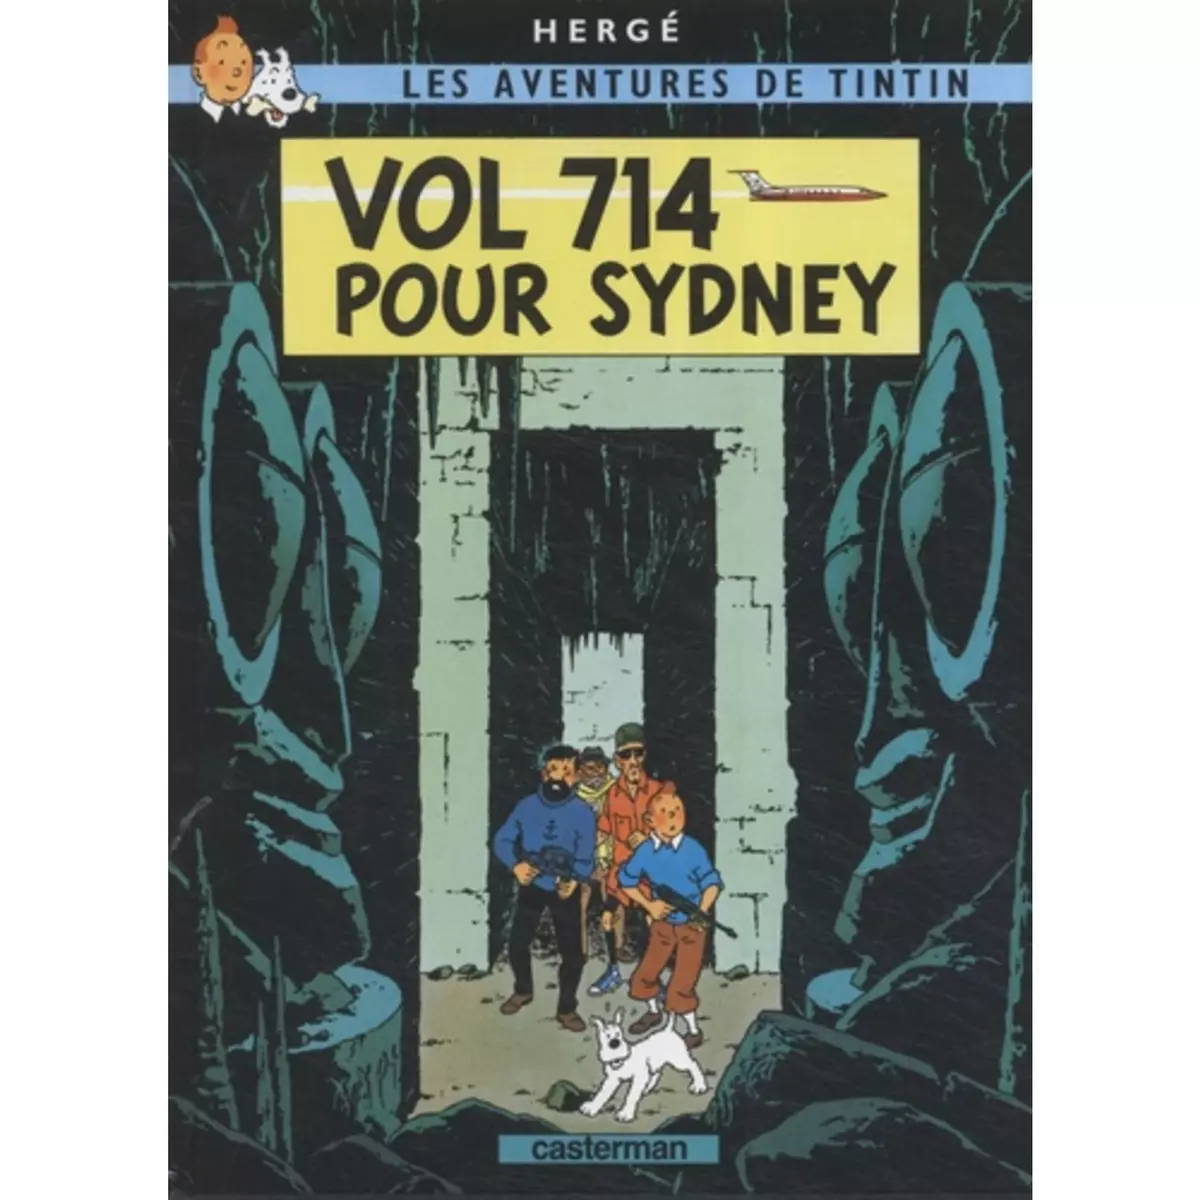  LES AVENTURES DE TINTIN TOME 22 : VOL 714 POUR SYDNEY. MINI-ALBUM, Hergé